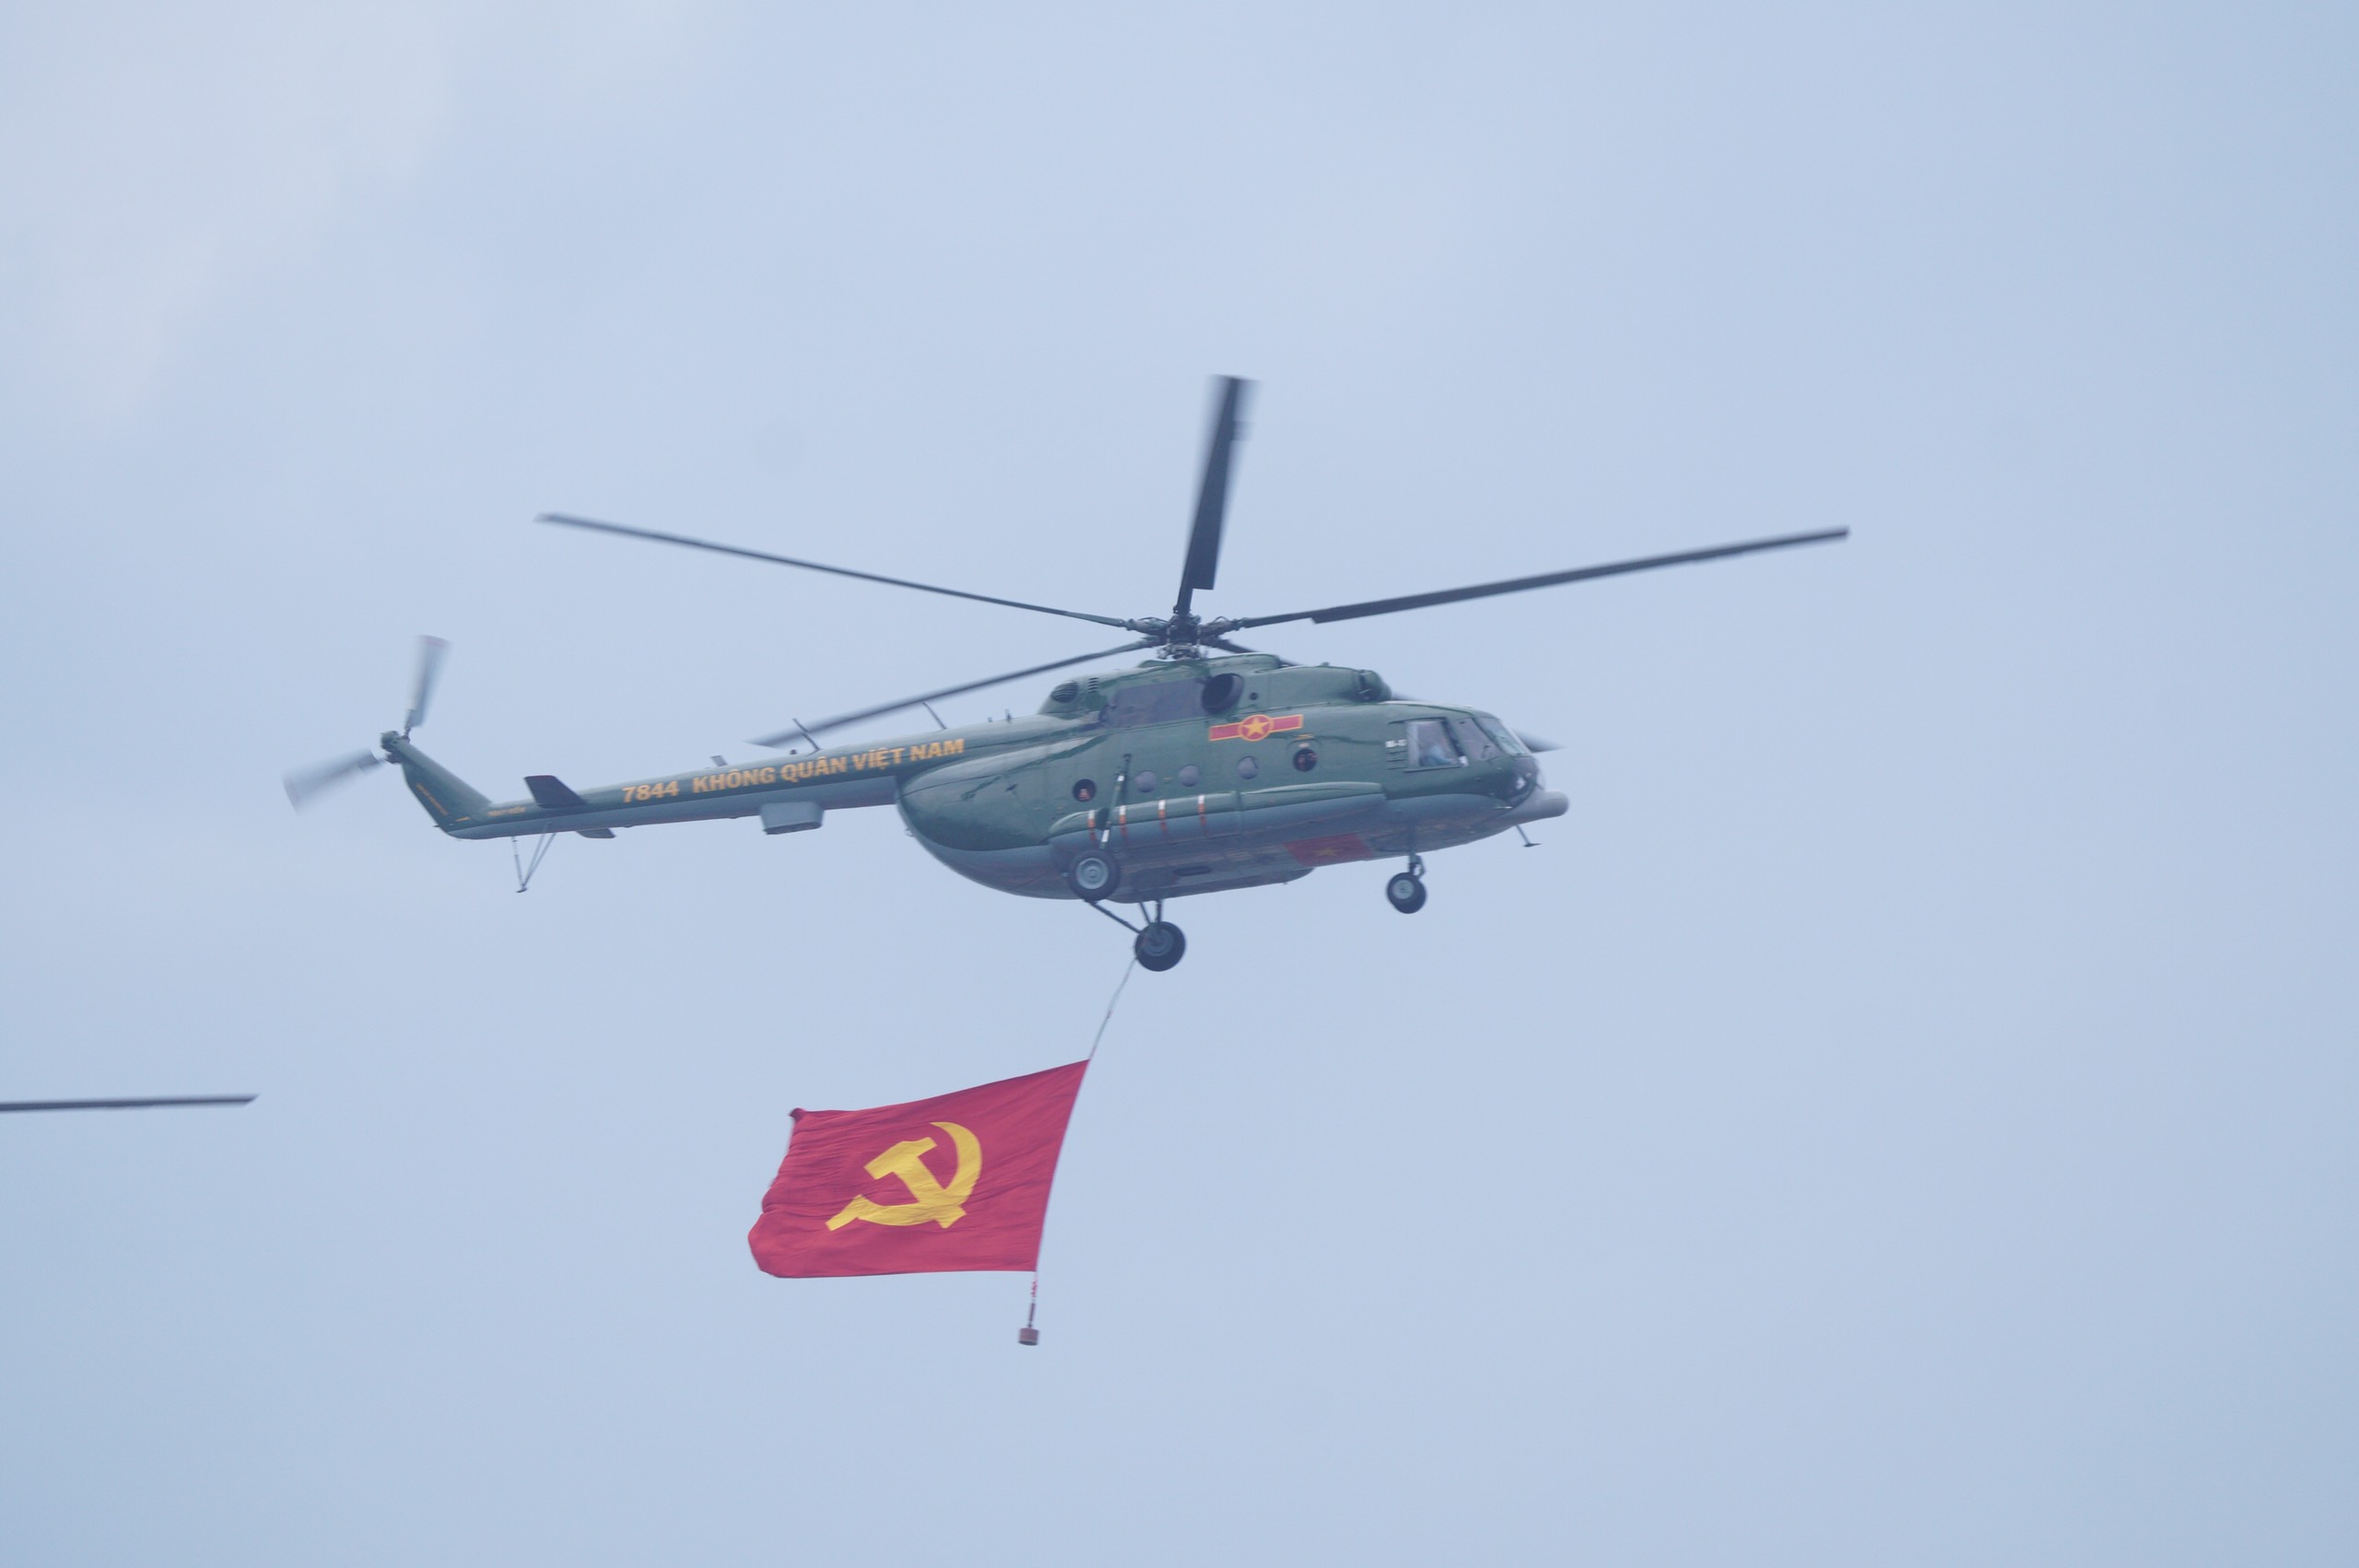 Mở đầu Cuộc diễu binh, diễu hành Kỷ niệm 70 năm Chiến thắng Điện Biên Phủ là các biên đội trực thăng vũ trang thuộc Quân chủng Phòng không - Không quân, Quân đội nhân dân Việt Nam mang theo cờ Đảng, cờ Tổ quốc.